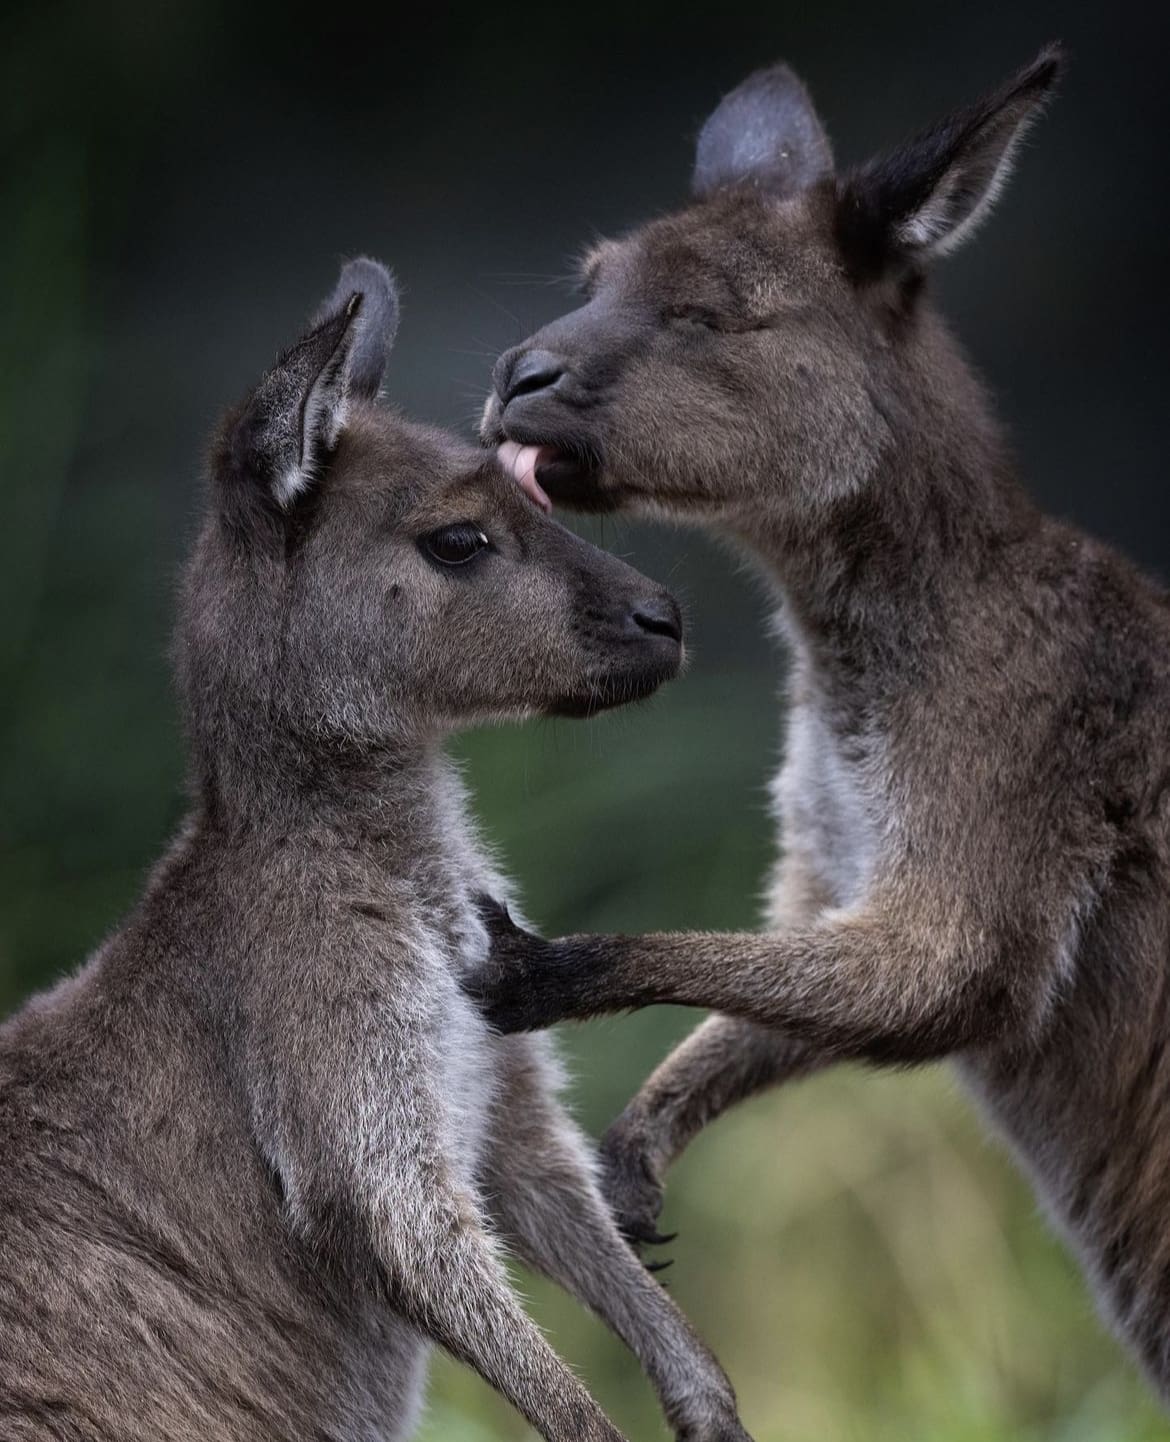 Australia wildlife photography